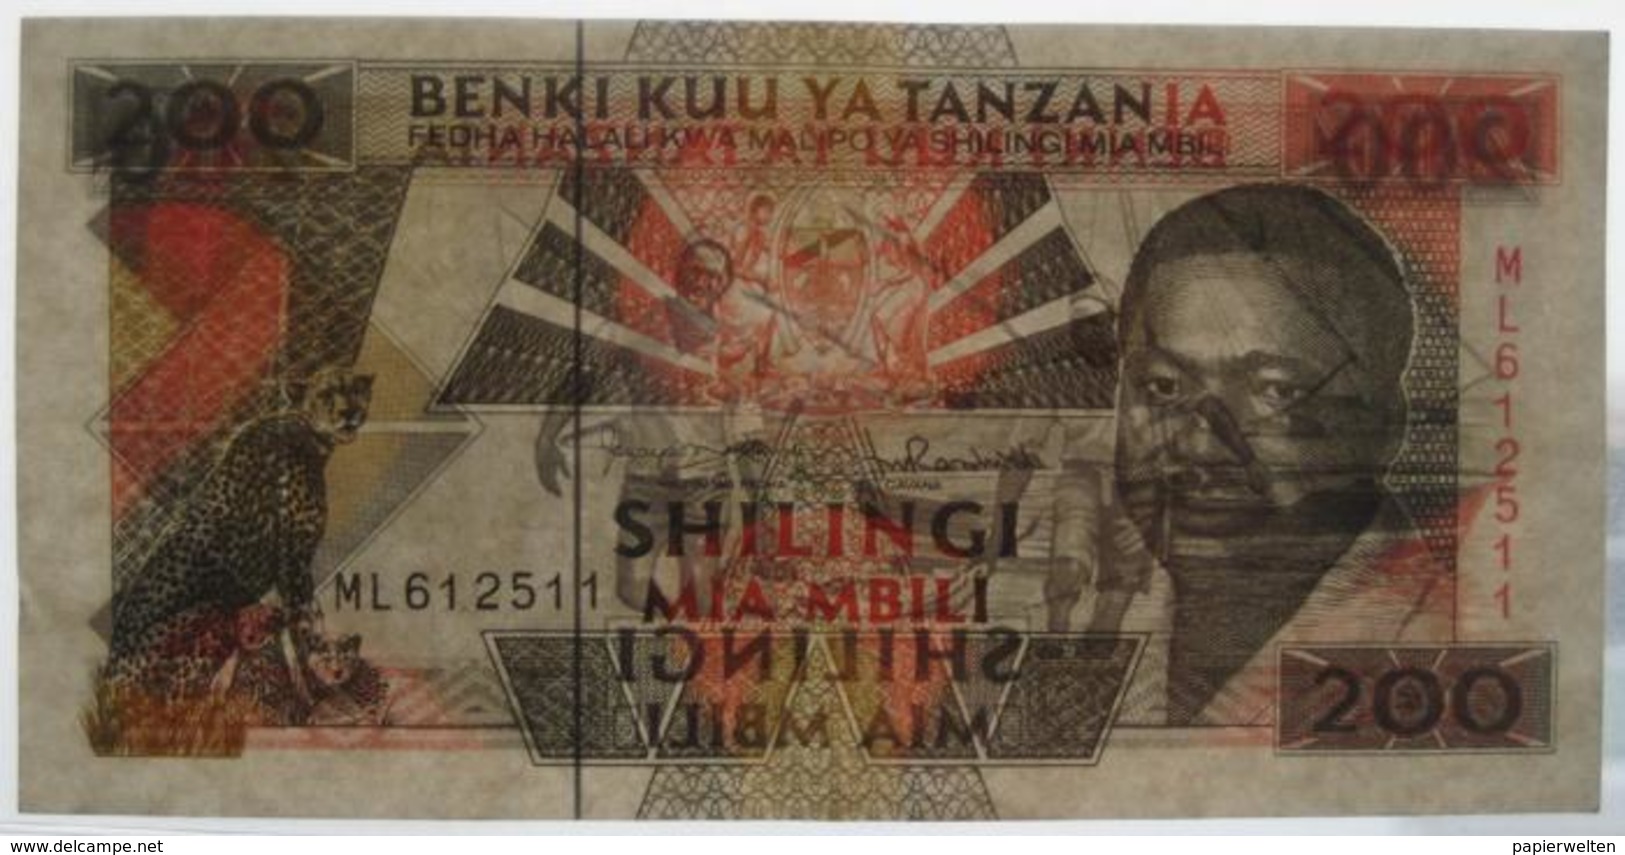 200 / Mia Mbili Shilingi ND (WPM 25b) - Tansania